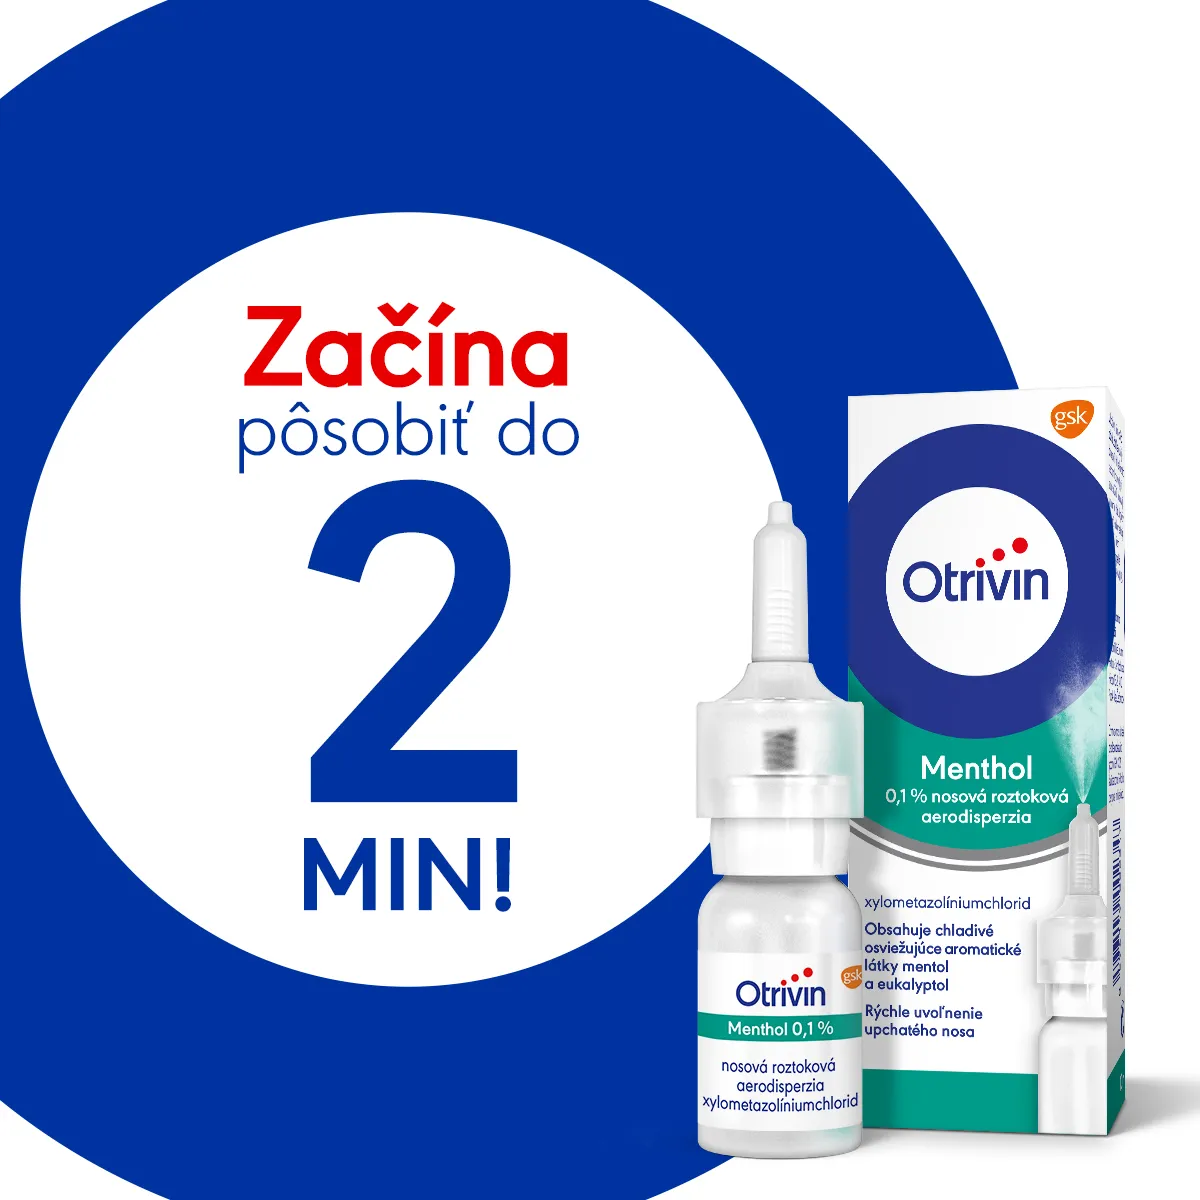 Otrivin Menthol nosový sprej 1x10ml, nosový sprej s mentolom, nádcha a upchatý nos